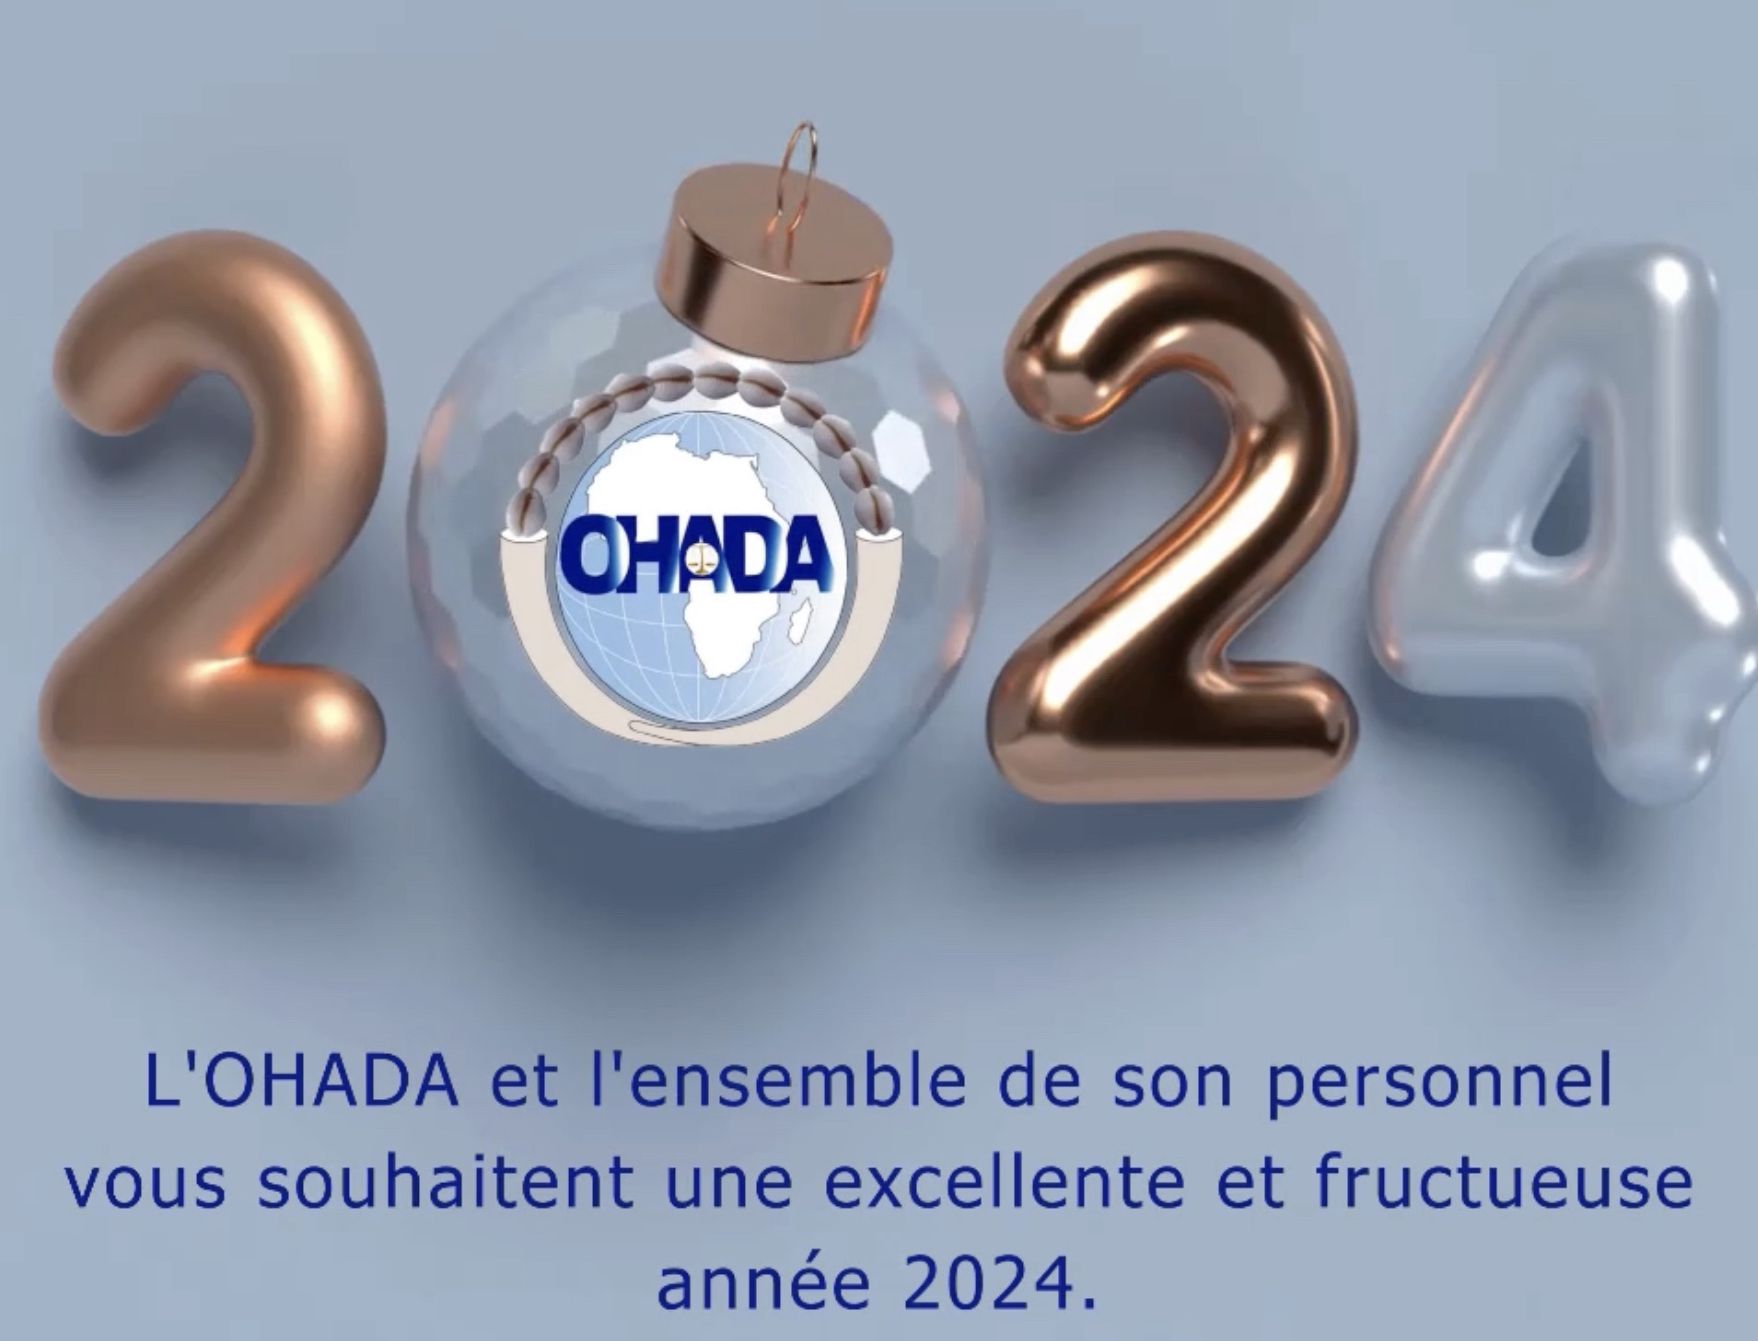 L’OHADA et l’ensemble de son personnel vous souhaitent une excellente et fructueuse année 2024